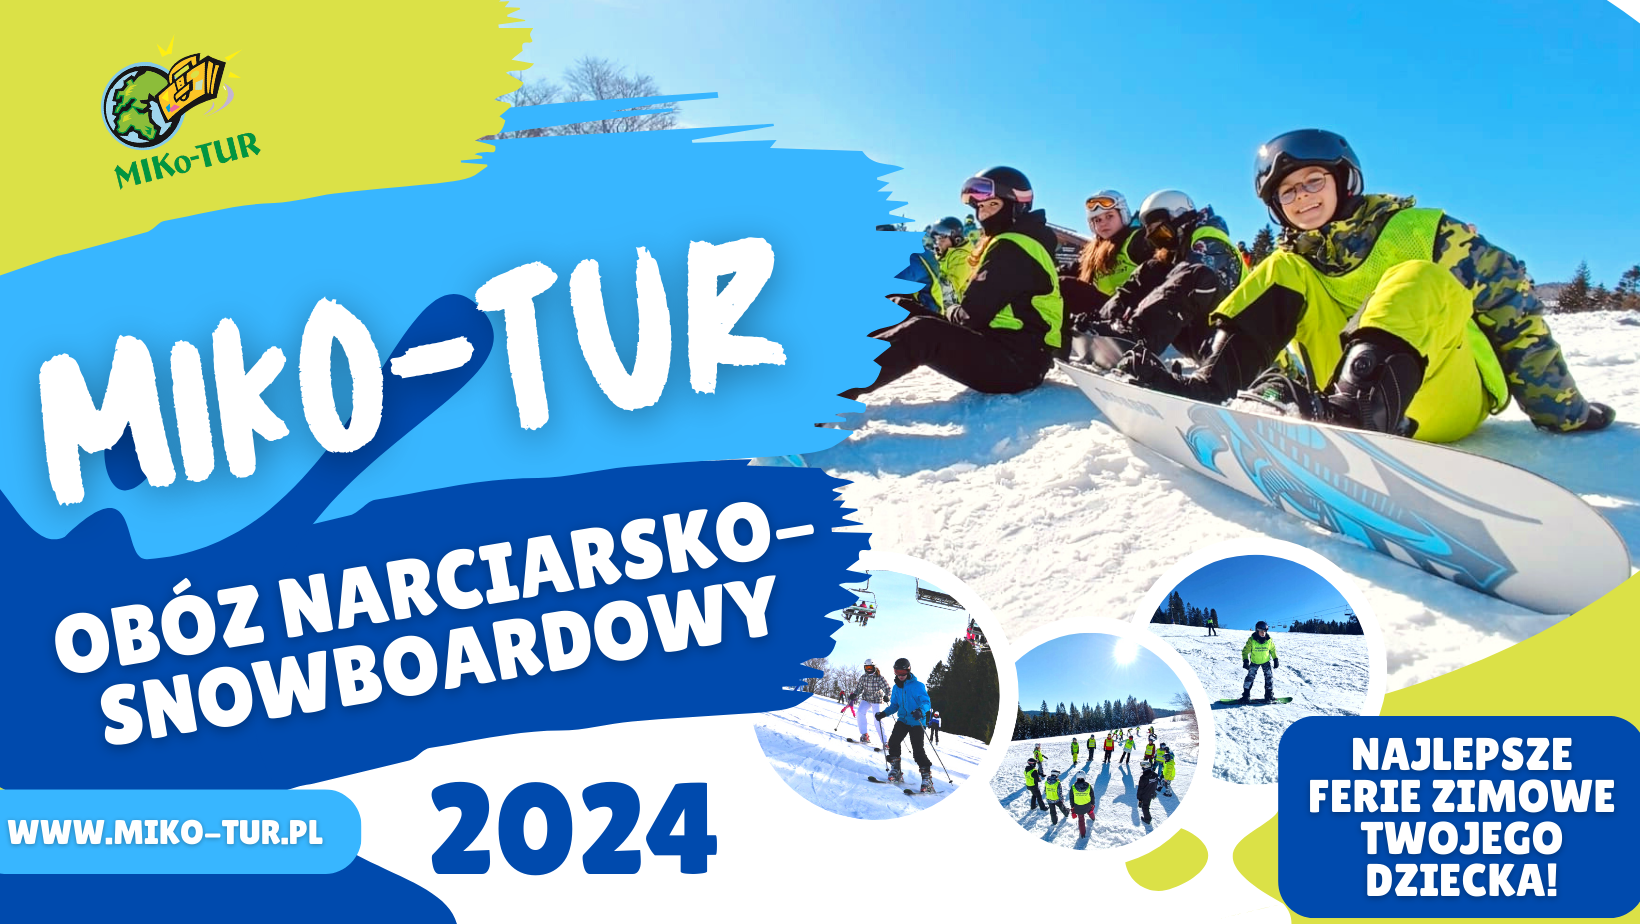 Ruszyły zapisy na obóz narciarsko-snowboardowy MIKo-TUR 2024